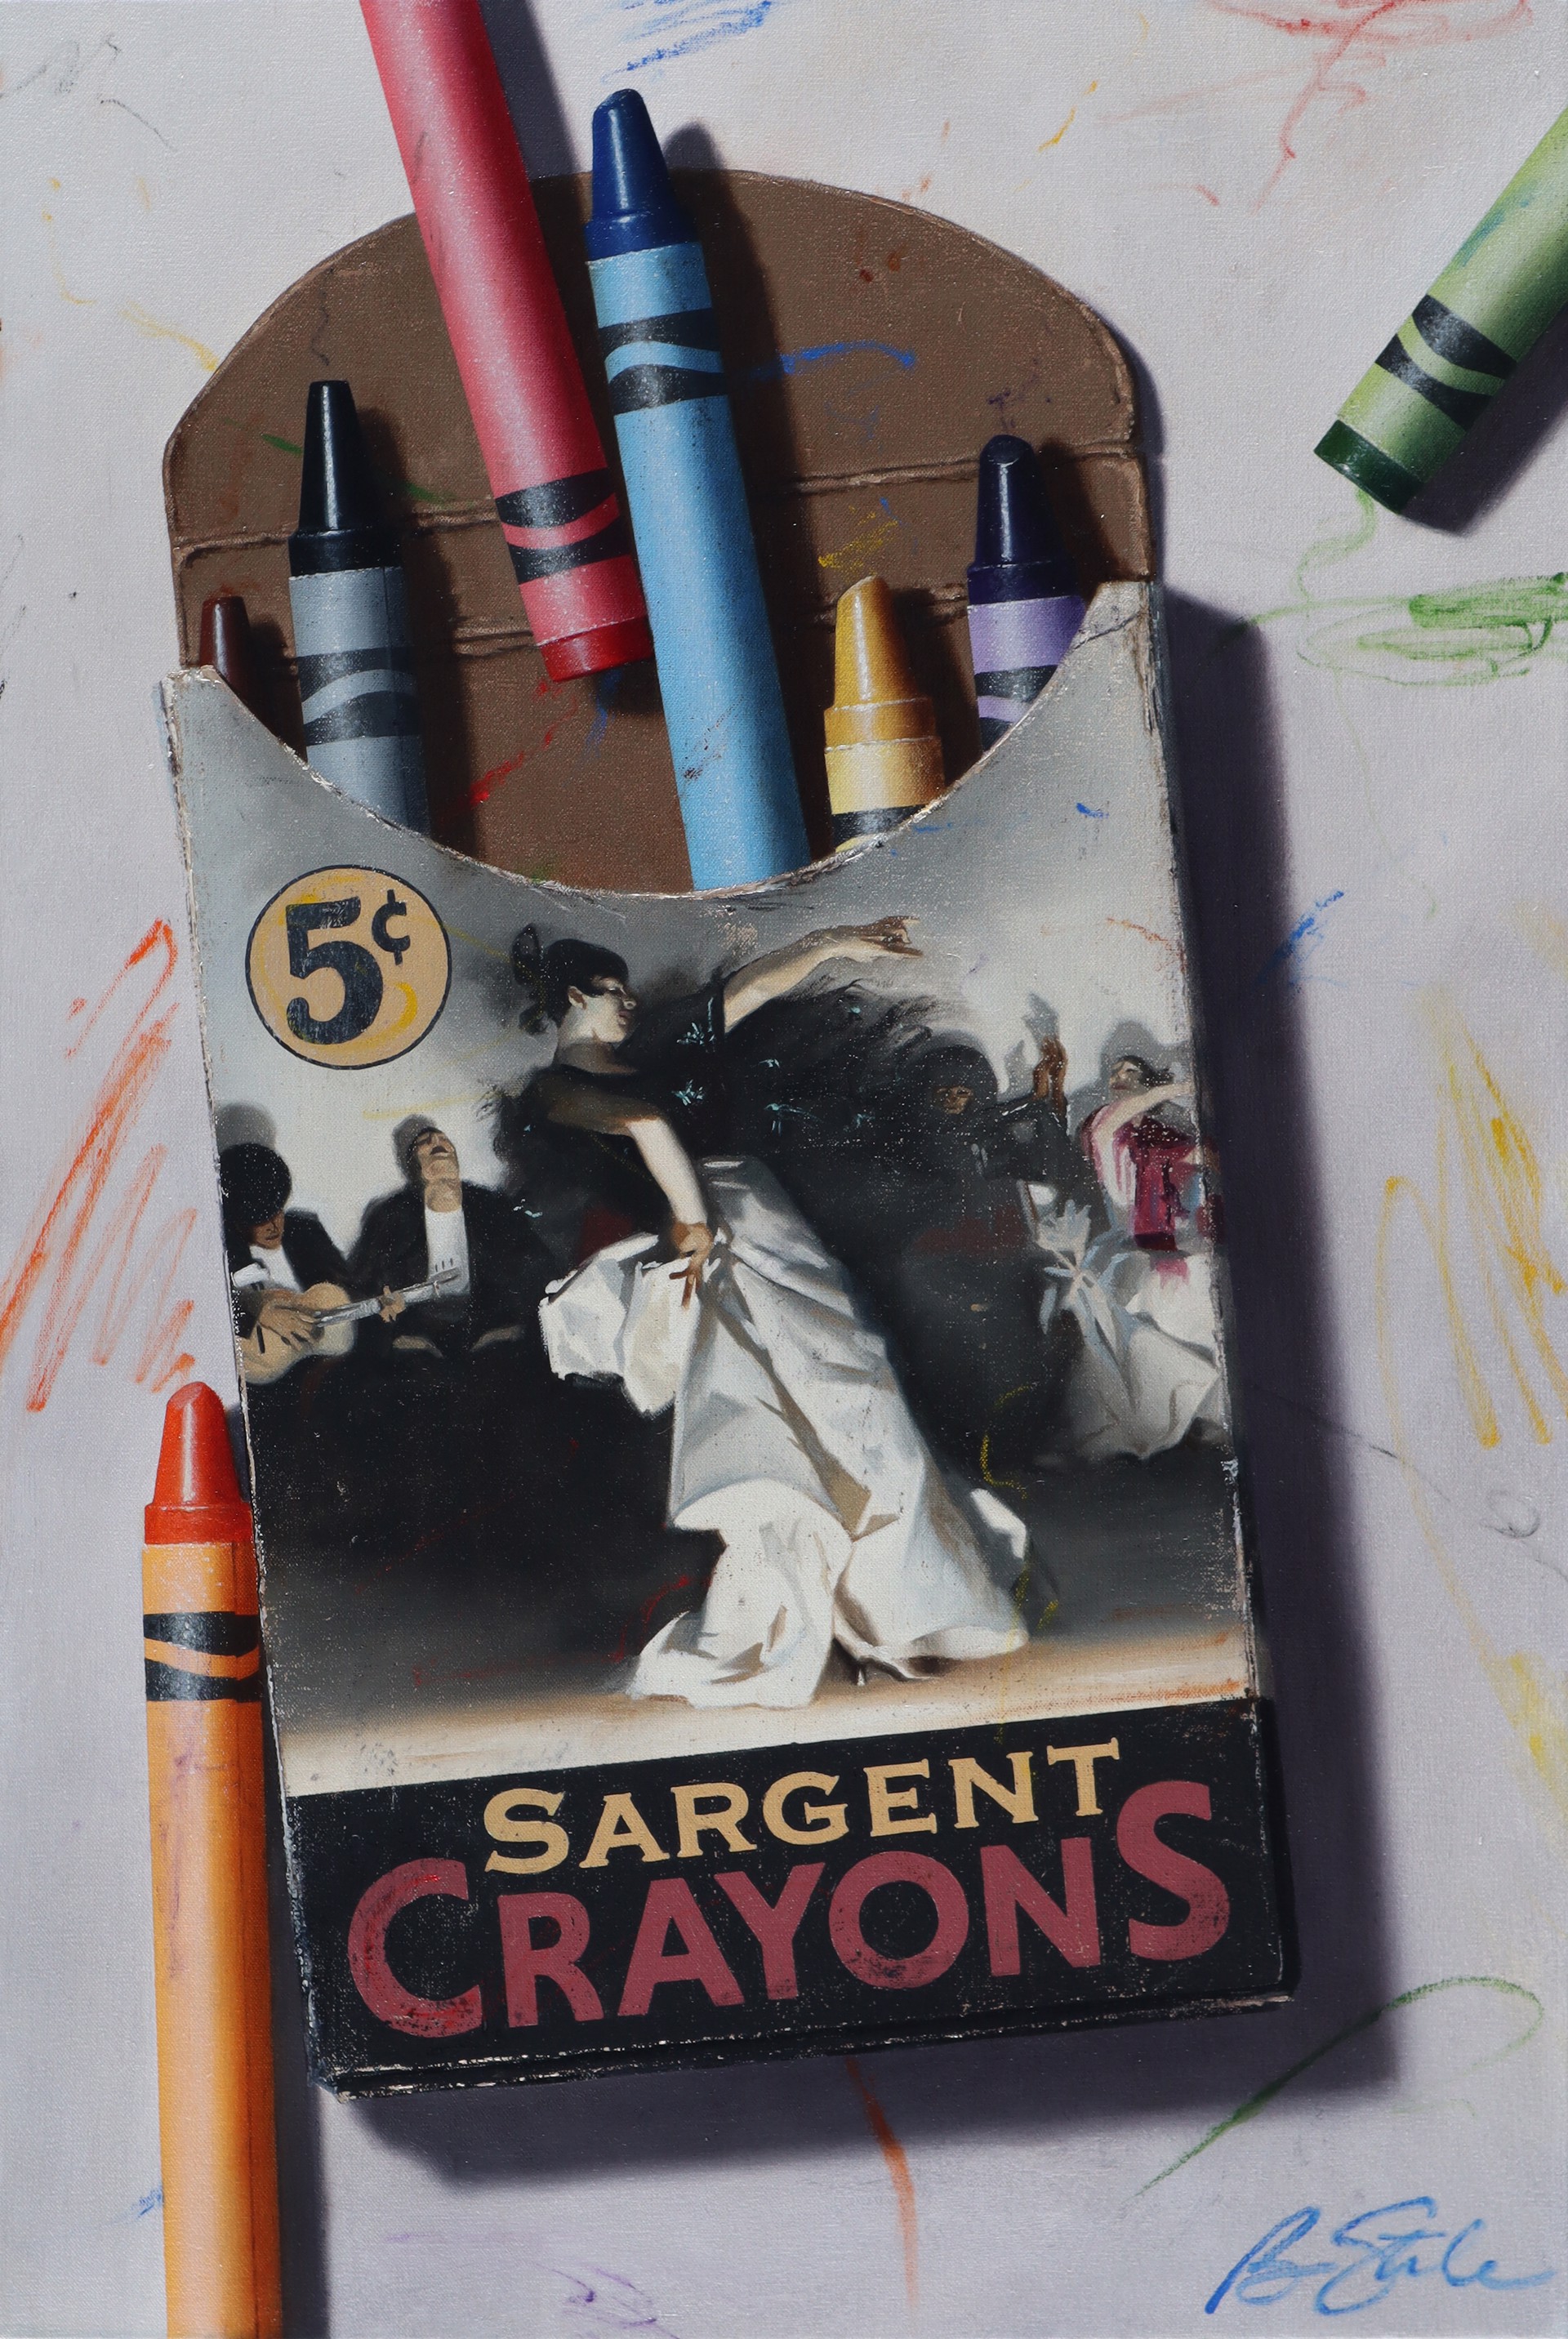 Sargent Crayons: El Jaleo by BEN STEELE